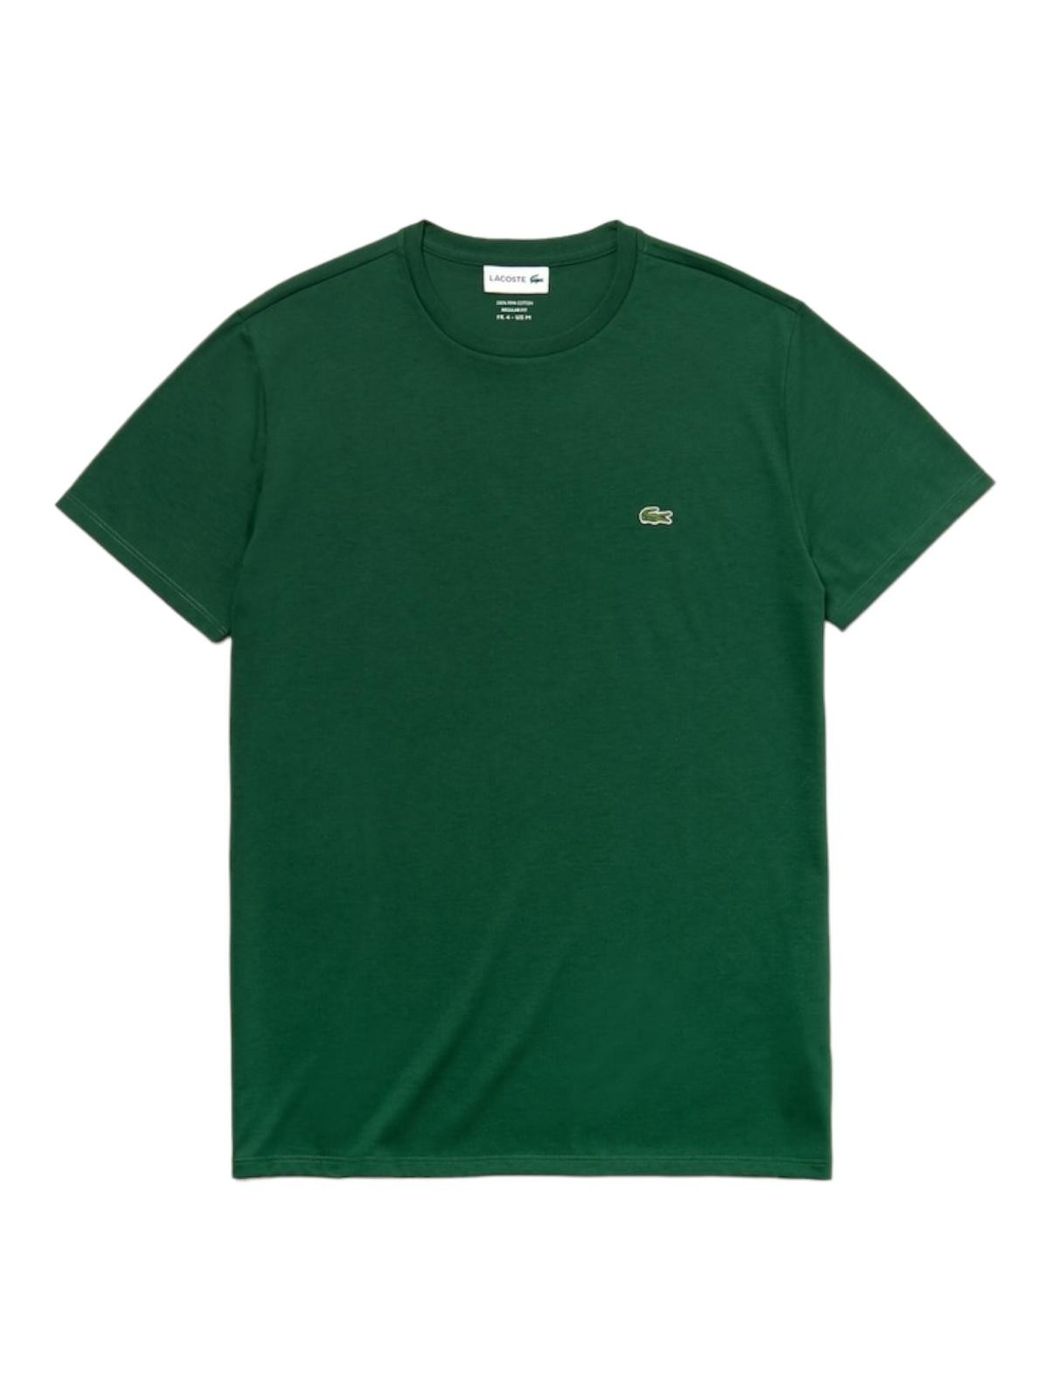 LACOSTE T-Shirt e Polo Uomo  TH6709 132 Verde